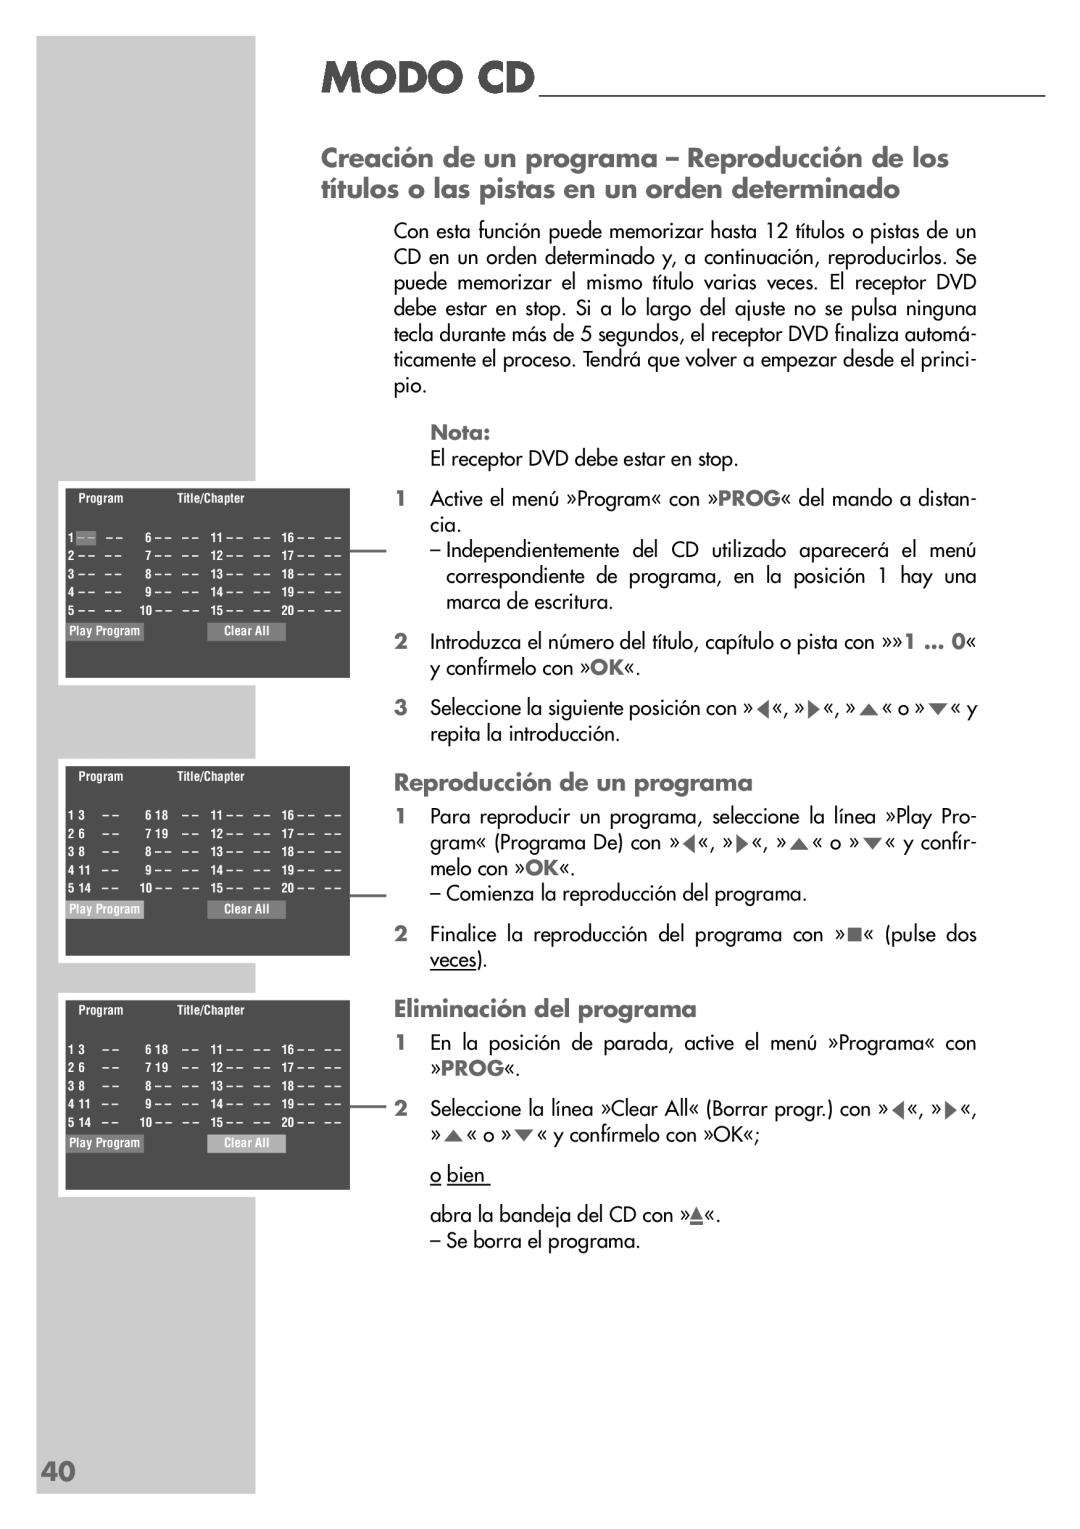 Grundig DR 5400 DD manual Reproducción de un programa, Eliminación del programa 